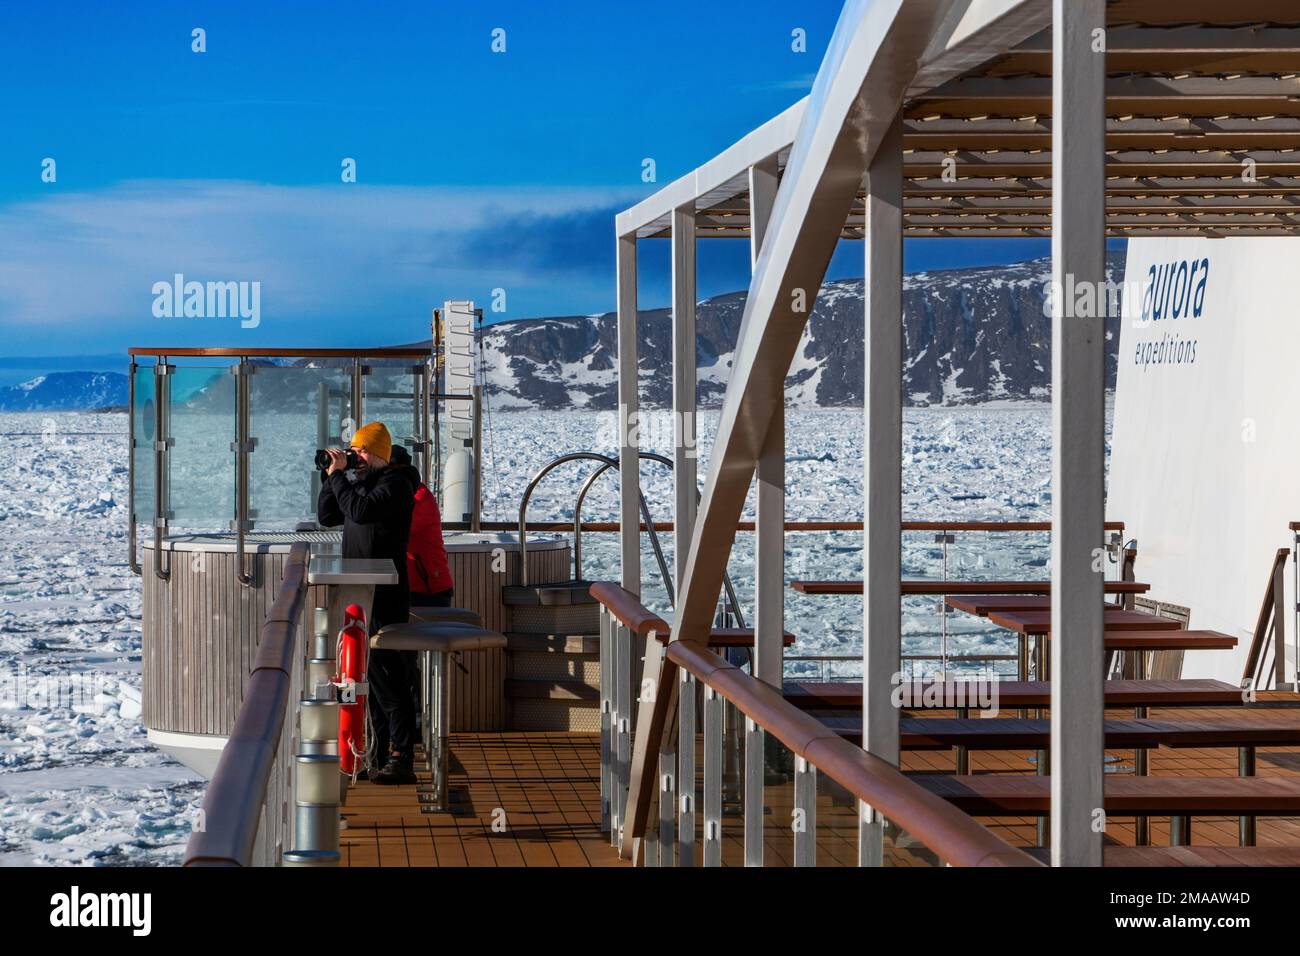 Tourisme a pris des photos dans le pont principal du navire de croisière Greg Mortimer dans l'archipel de Svalbard, en Norvège arctique. Banque D'Images